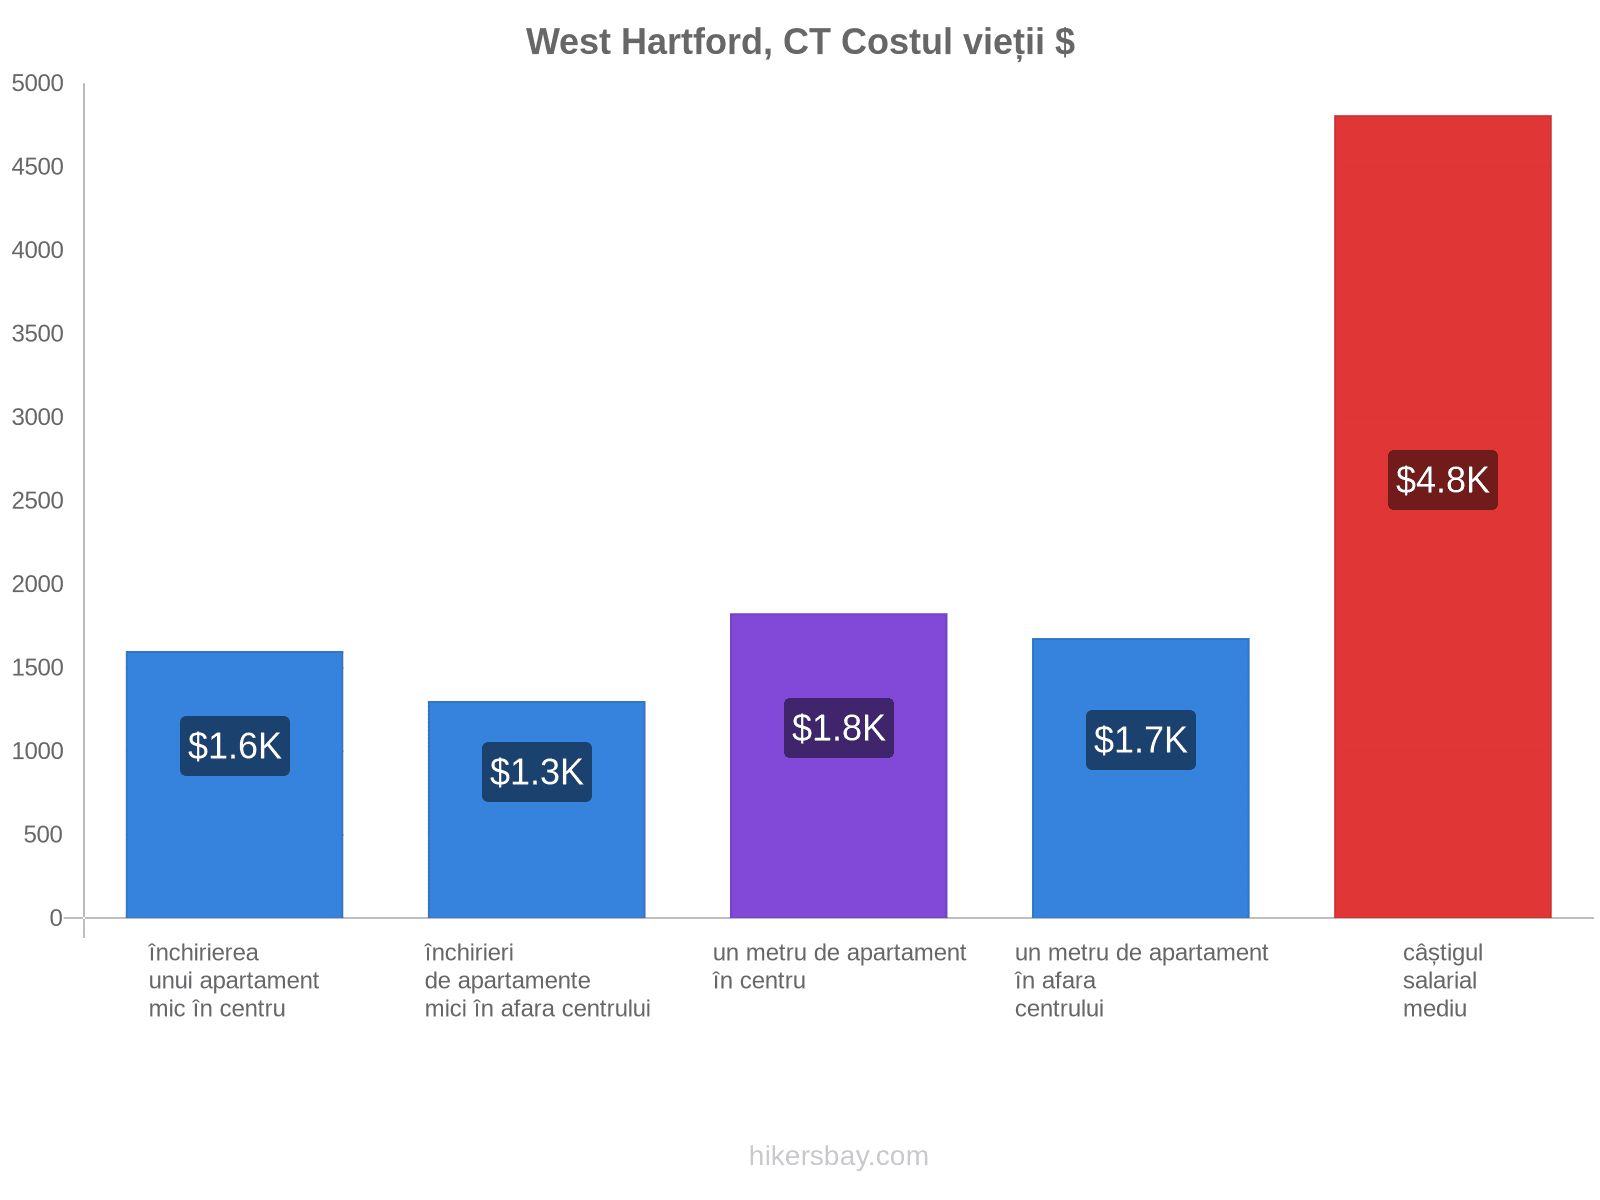 West Hartford, CT costul vieții hikersbay.com